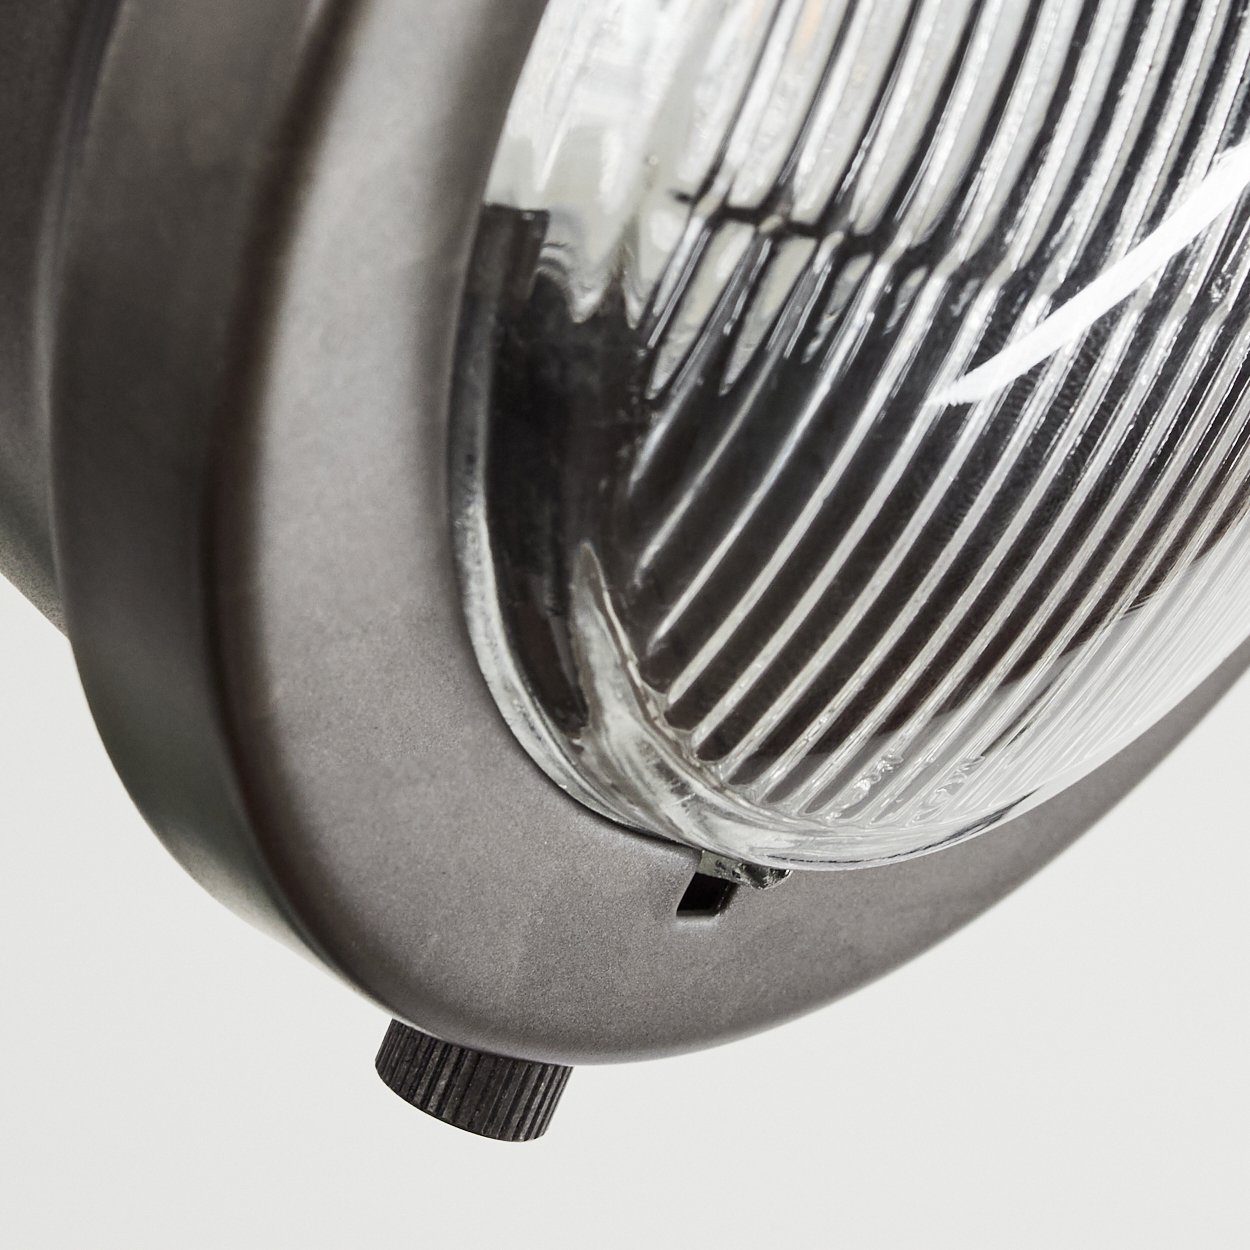 Braun, Deckenlampe Spot »Gavi« dreh-/schwenkbar, Leuchtmittel, in Metall/Holz hofstein im ohne Lampenschirm Deckenleuchte dimmbare 4xGU10, aus Retro-Design